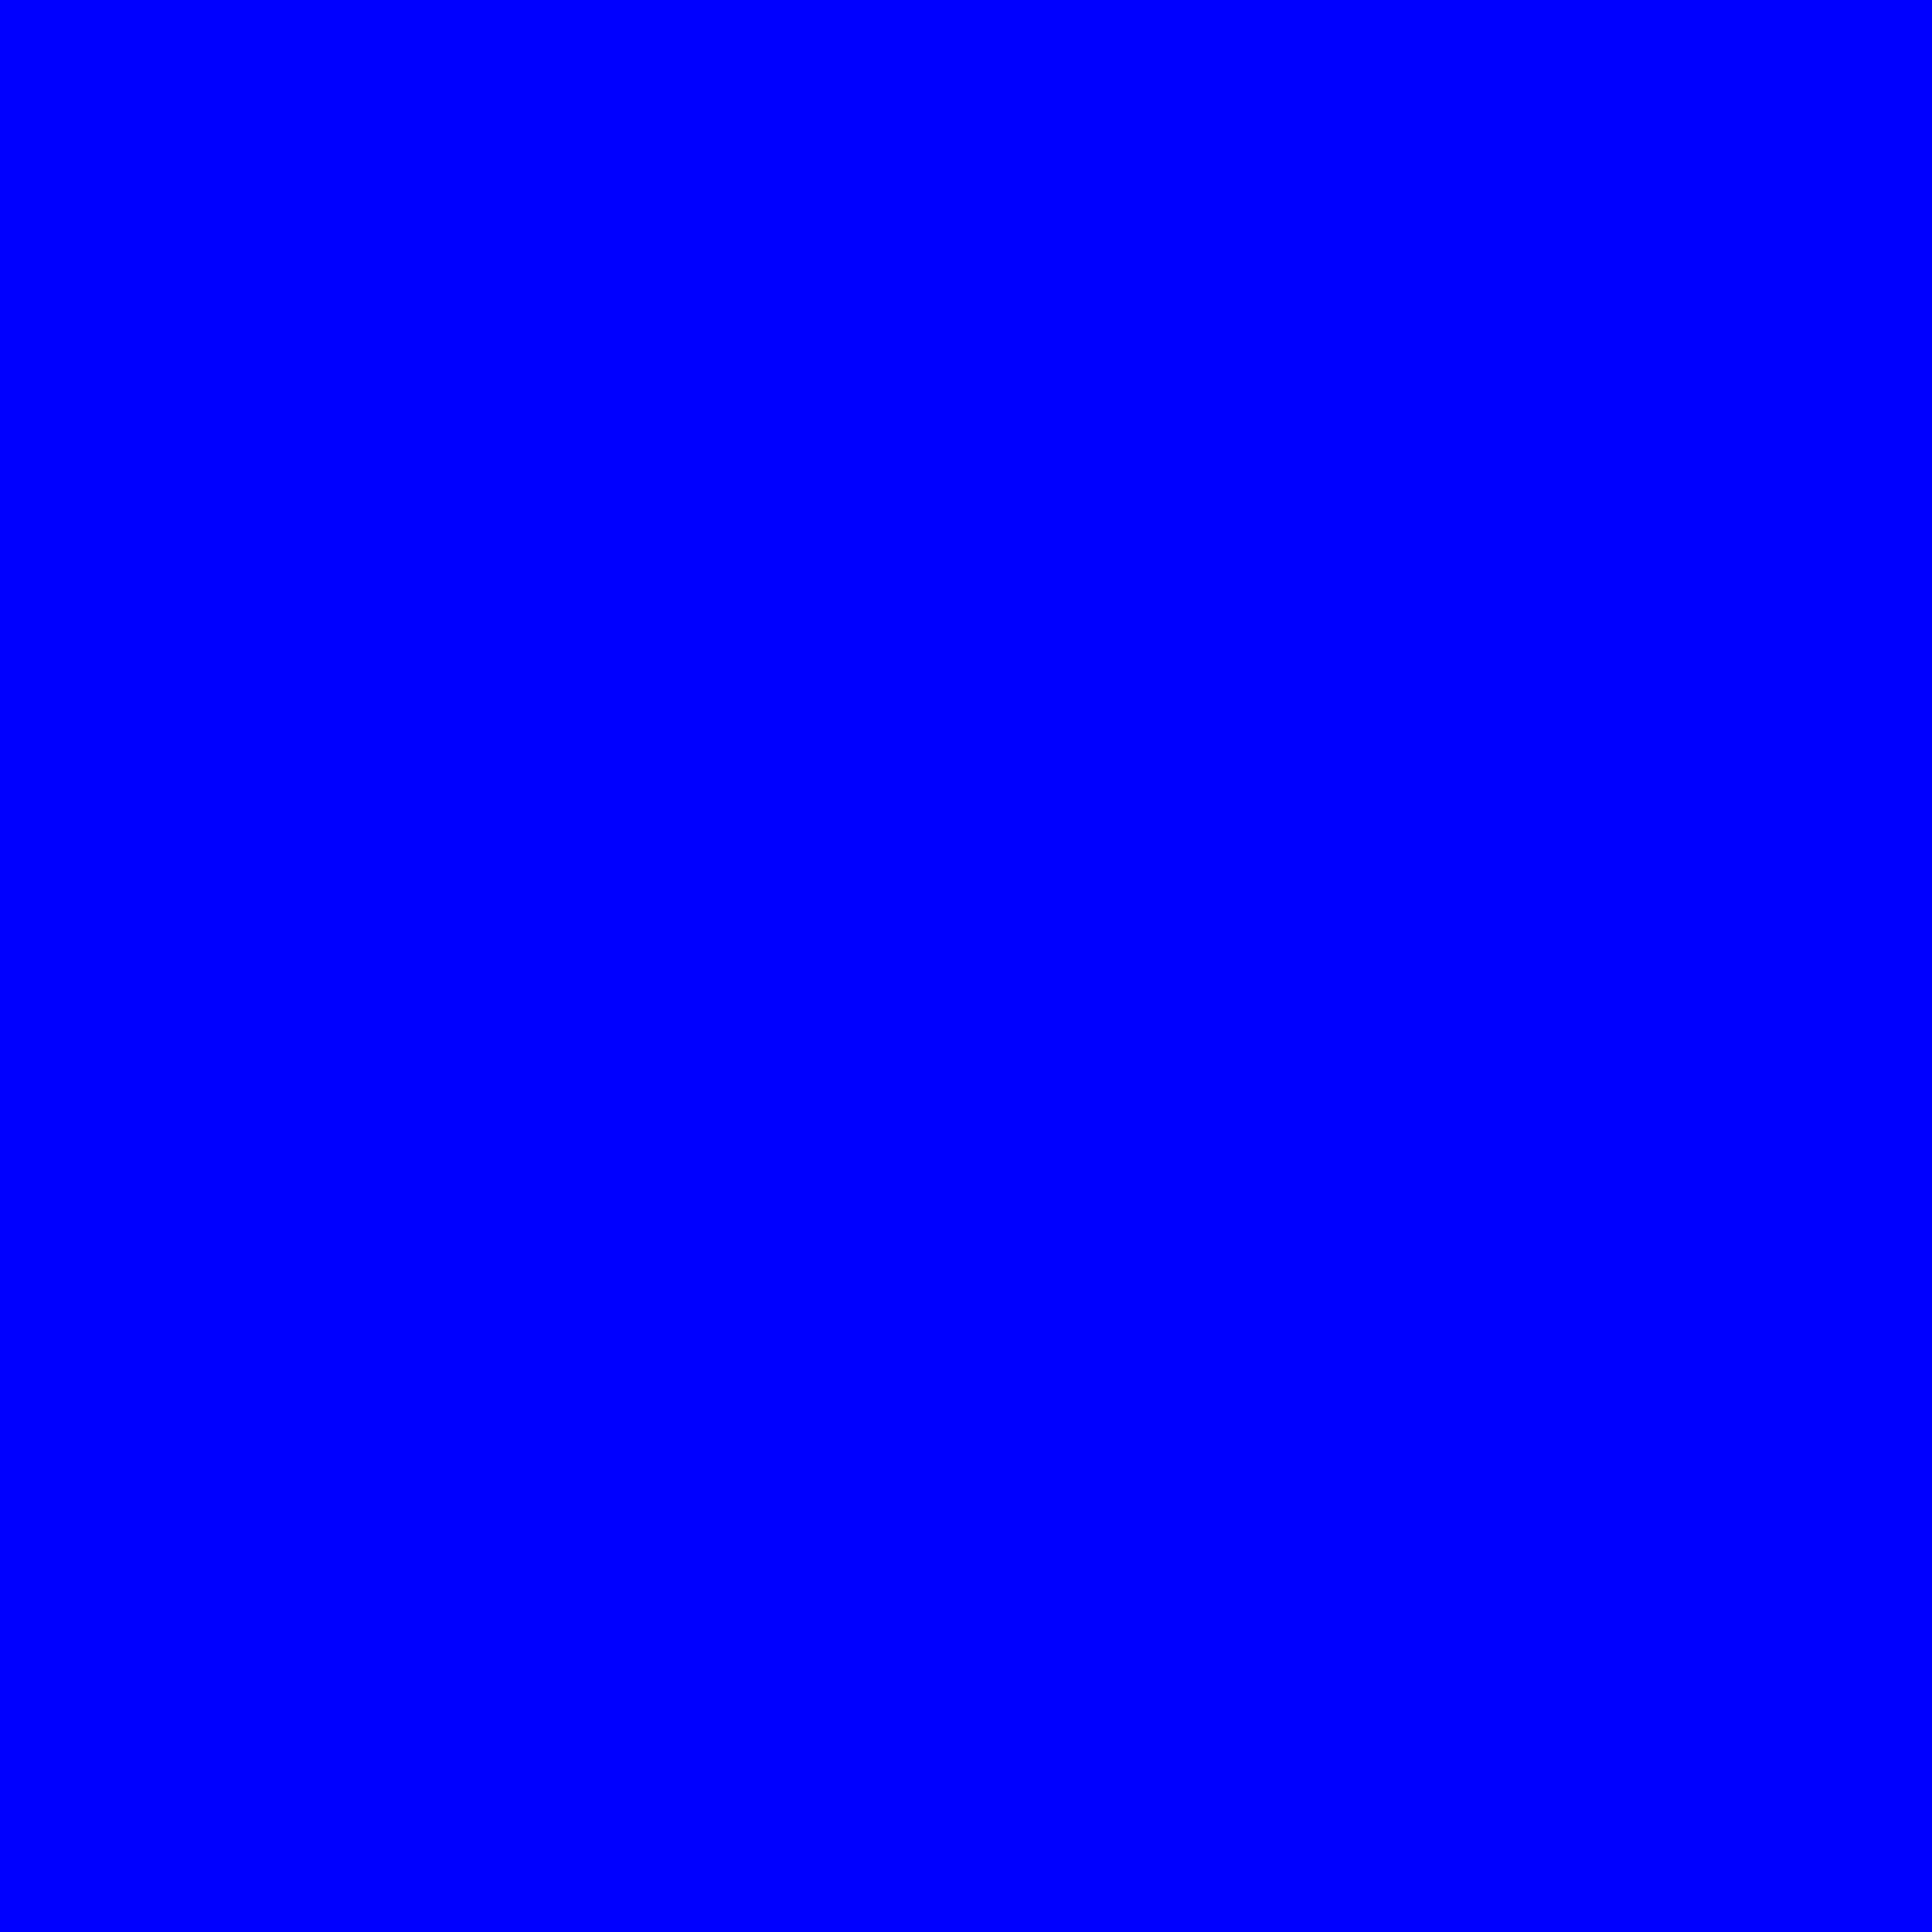 Màu sắc đậm chất lượng cao và vẻ đẹp đơn giản của file Solid Blue.svg sẽ khiến bạn không thể bỏ qua. Hãy tìm hiểu về sự độc đáo của màu xanh đậm này với những hình ảnh đẹp mắt và tinh tế. Bạn sẽ phải ngỡ ngàng với vẻ đẹp đơn giản nhưng cực kỳ tinh tế của những hình ảnh Solid Blue.svg này.